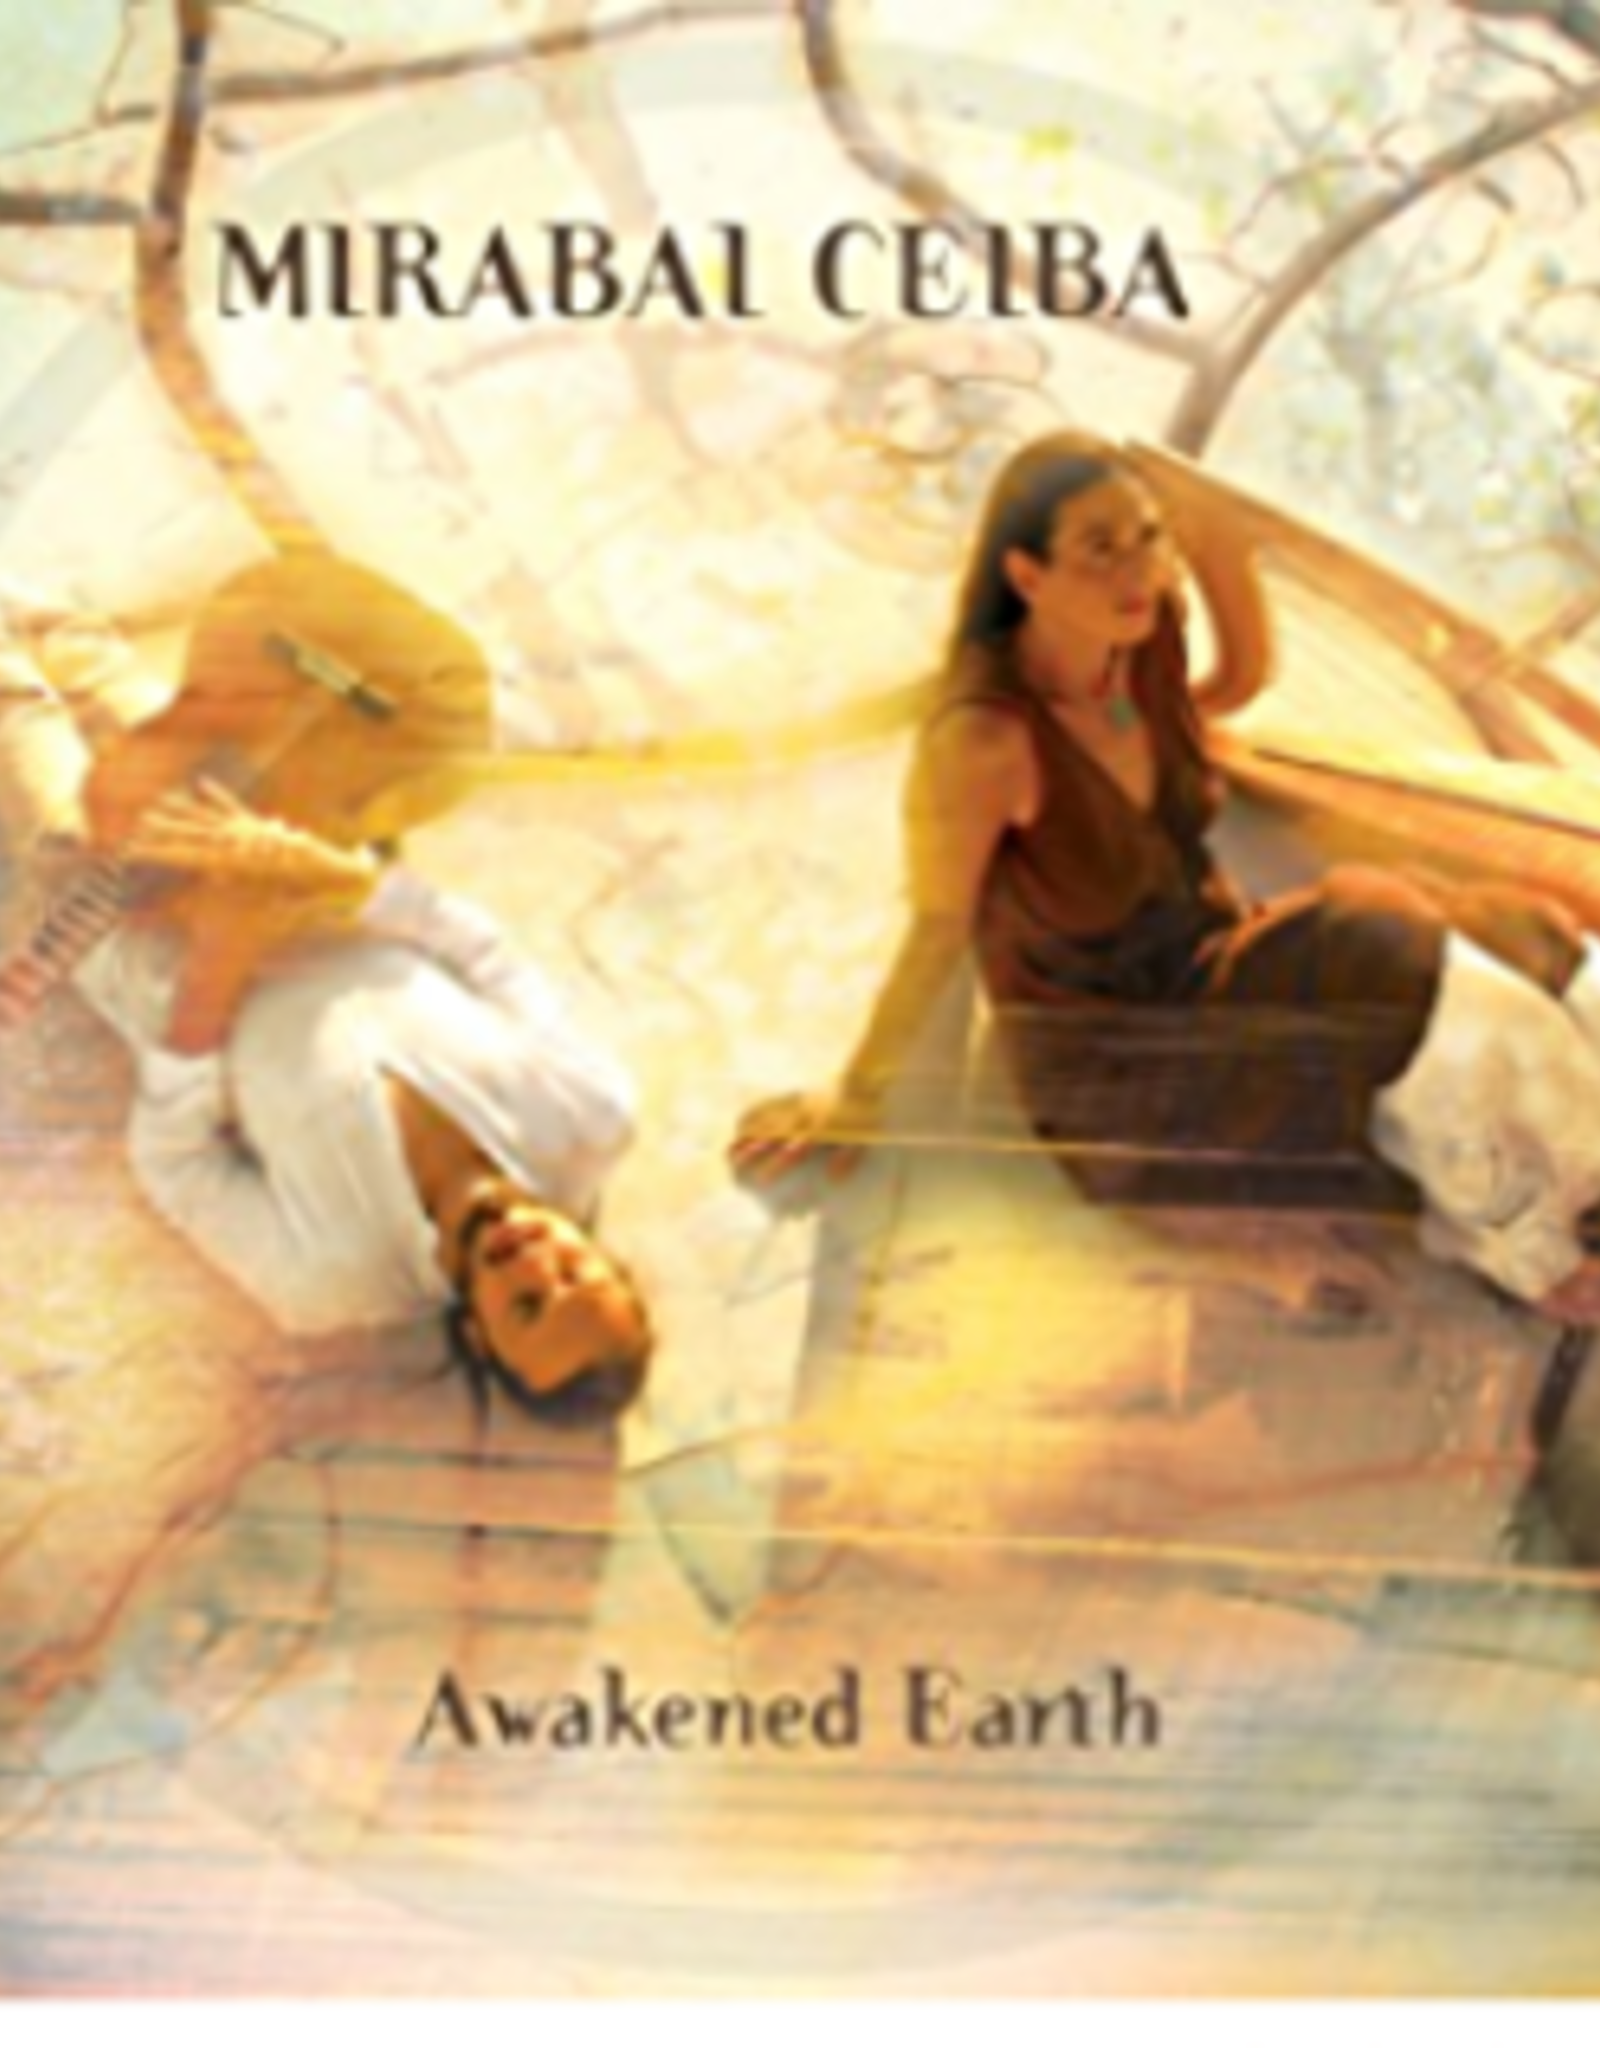 Mirabai Ceiba Awaken Earth CD by Mirabai Ceiba